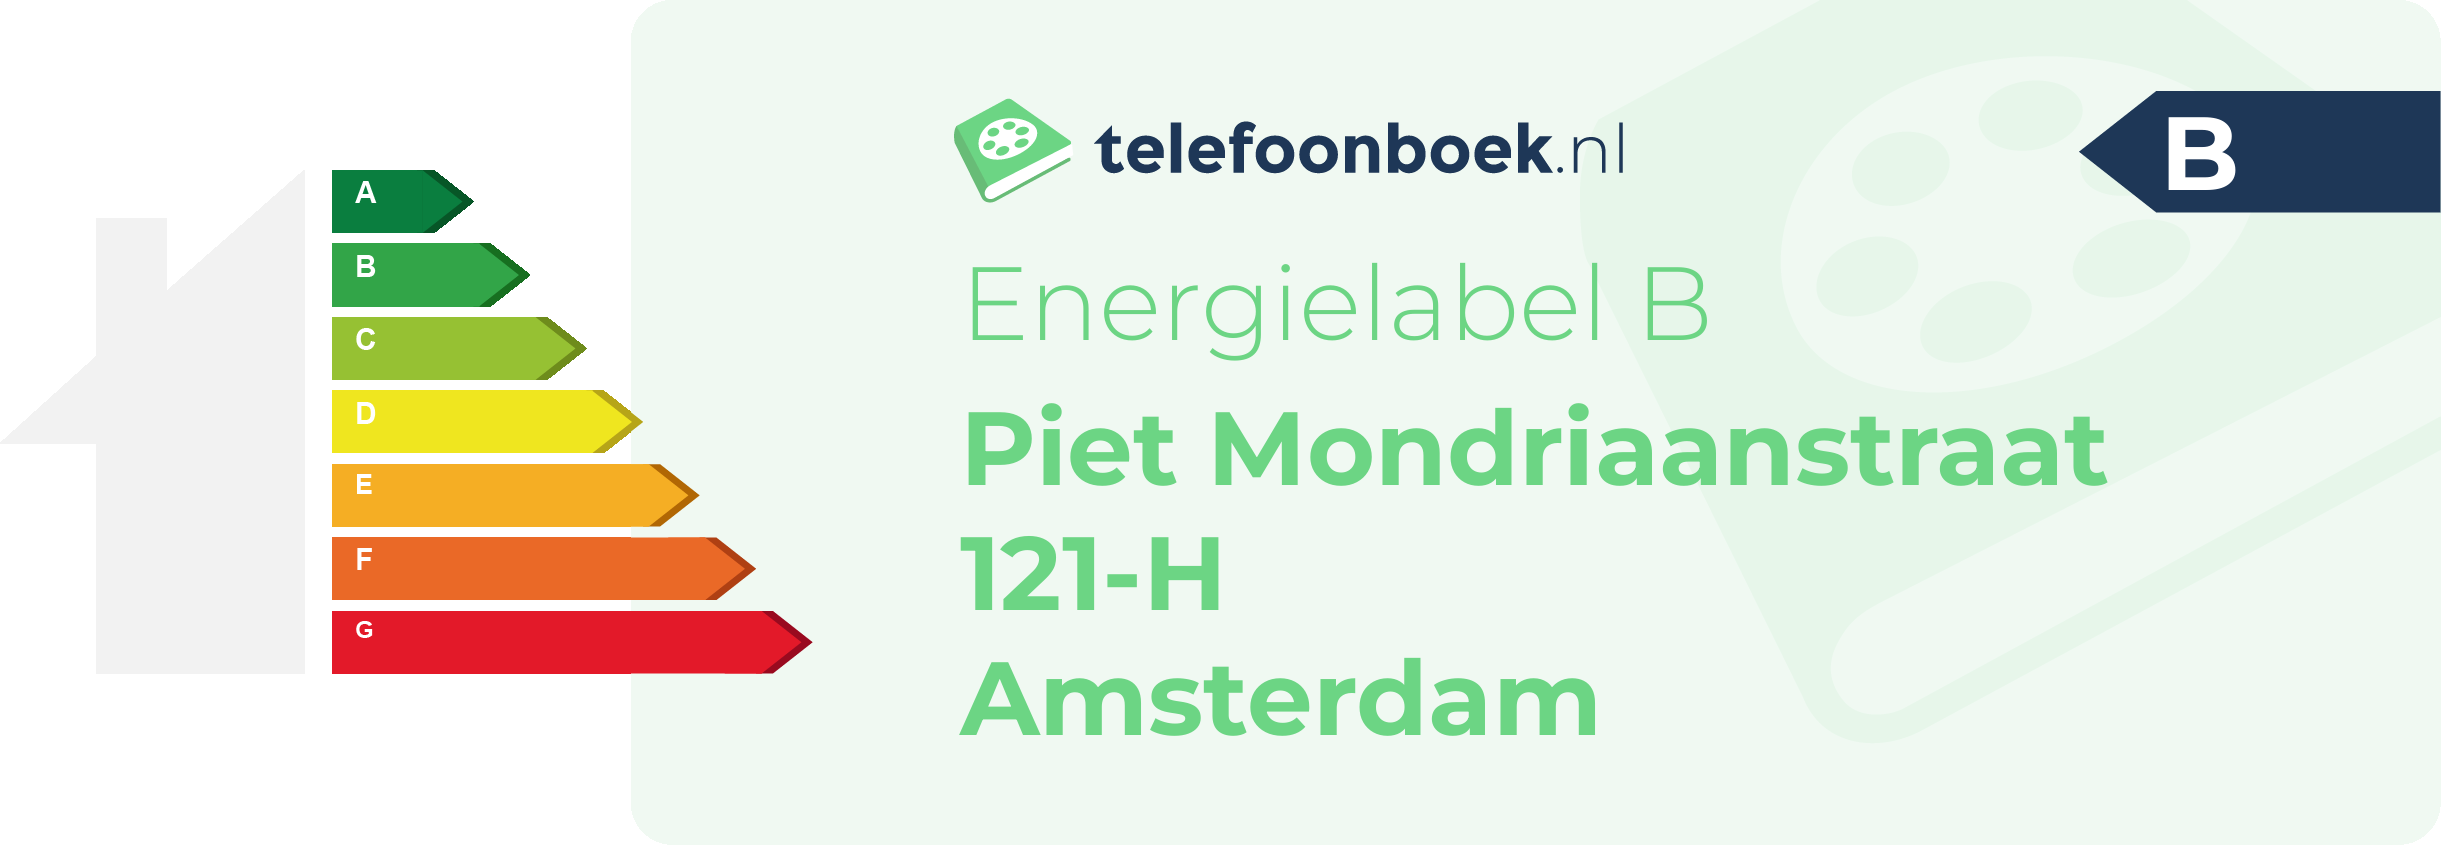 Energielabel Piet Mondriaanstraat 121-H Amsterdam